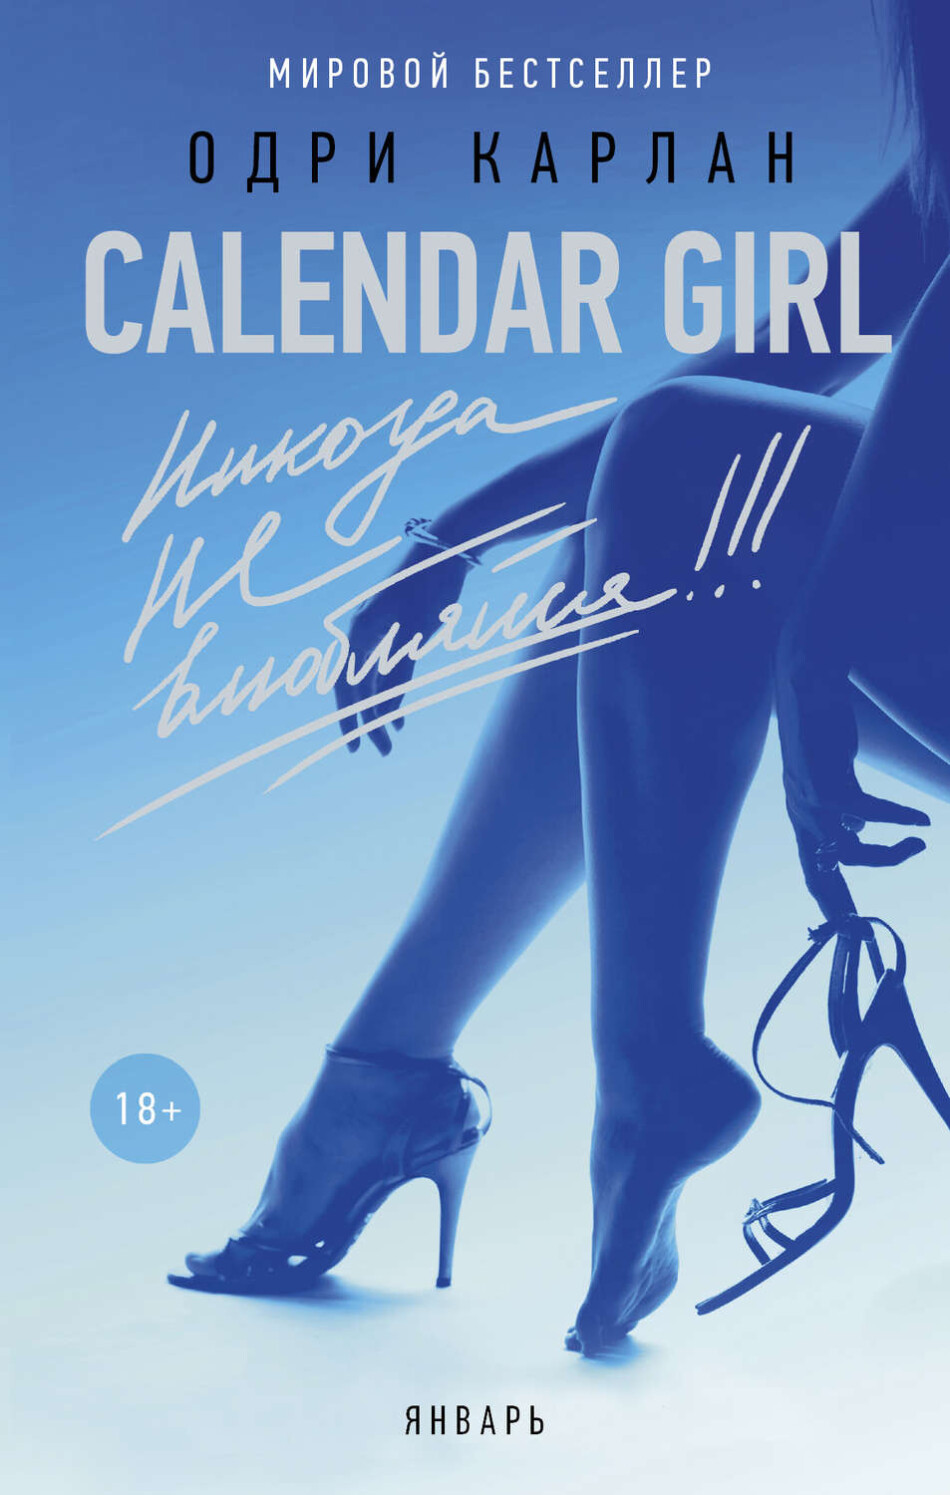 «Calendar Girl. Никогда не влюбляйся!» Одри Карлан